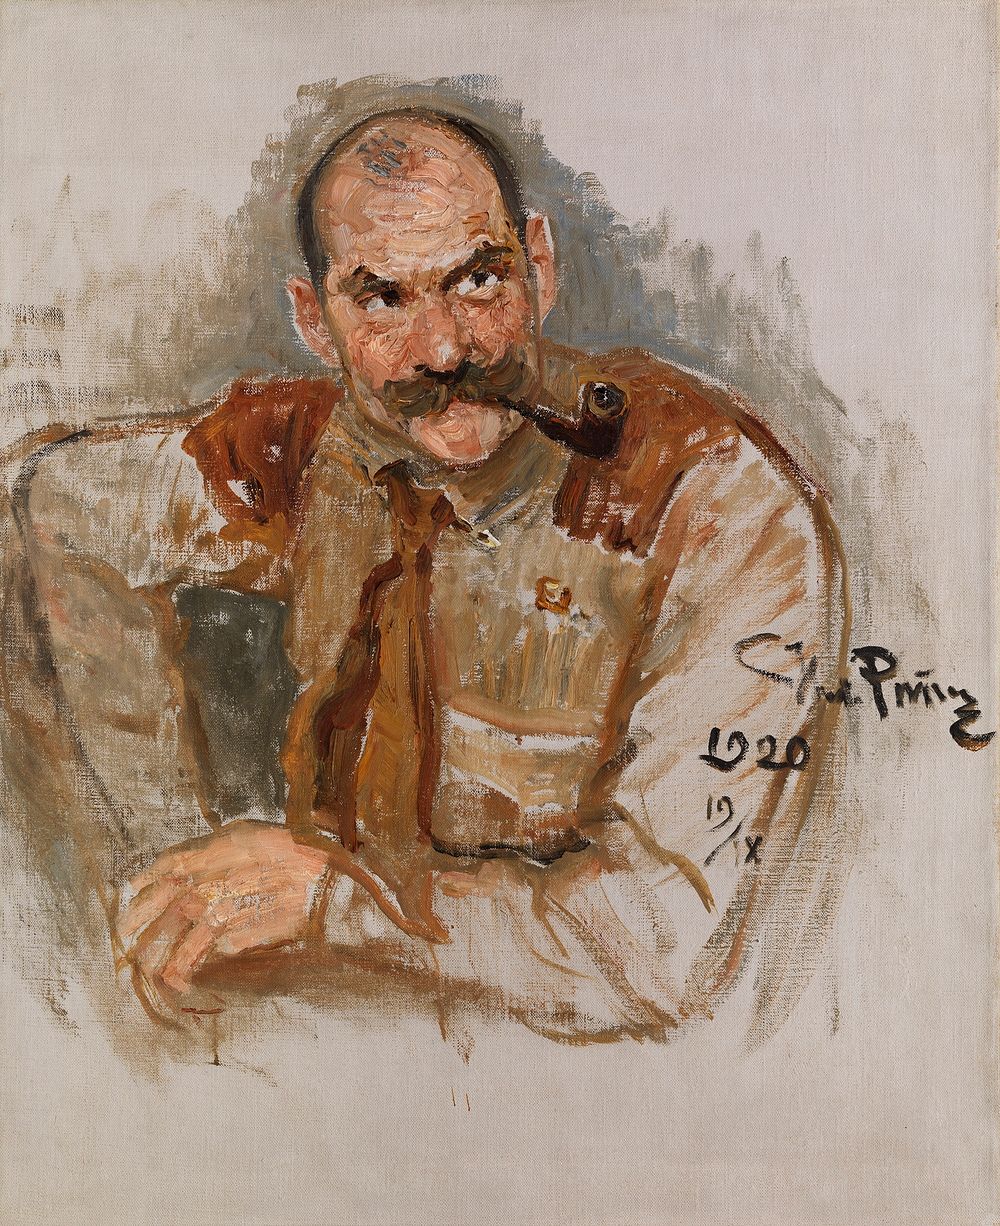 Portrait of a. gallen-kallela, 1920